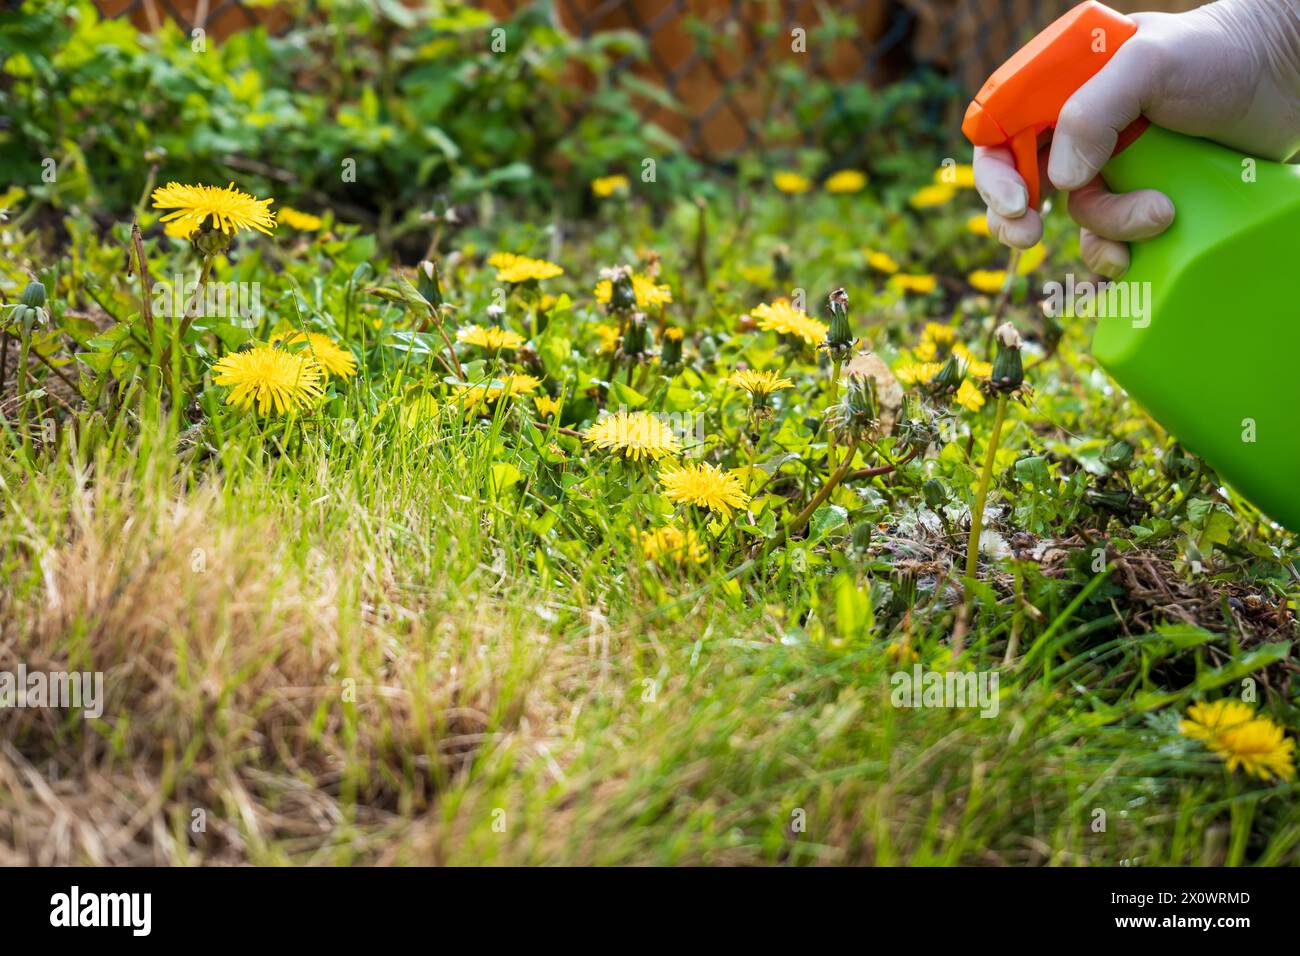 Gärtner sprüht Unkrautvernichter auf Löwenzahn Unkraut, das im Garten wächst. Stockfoto